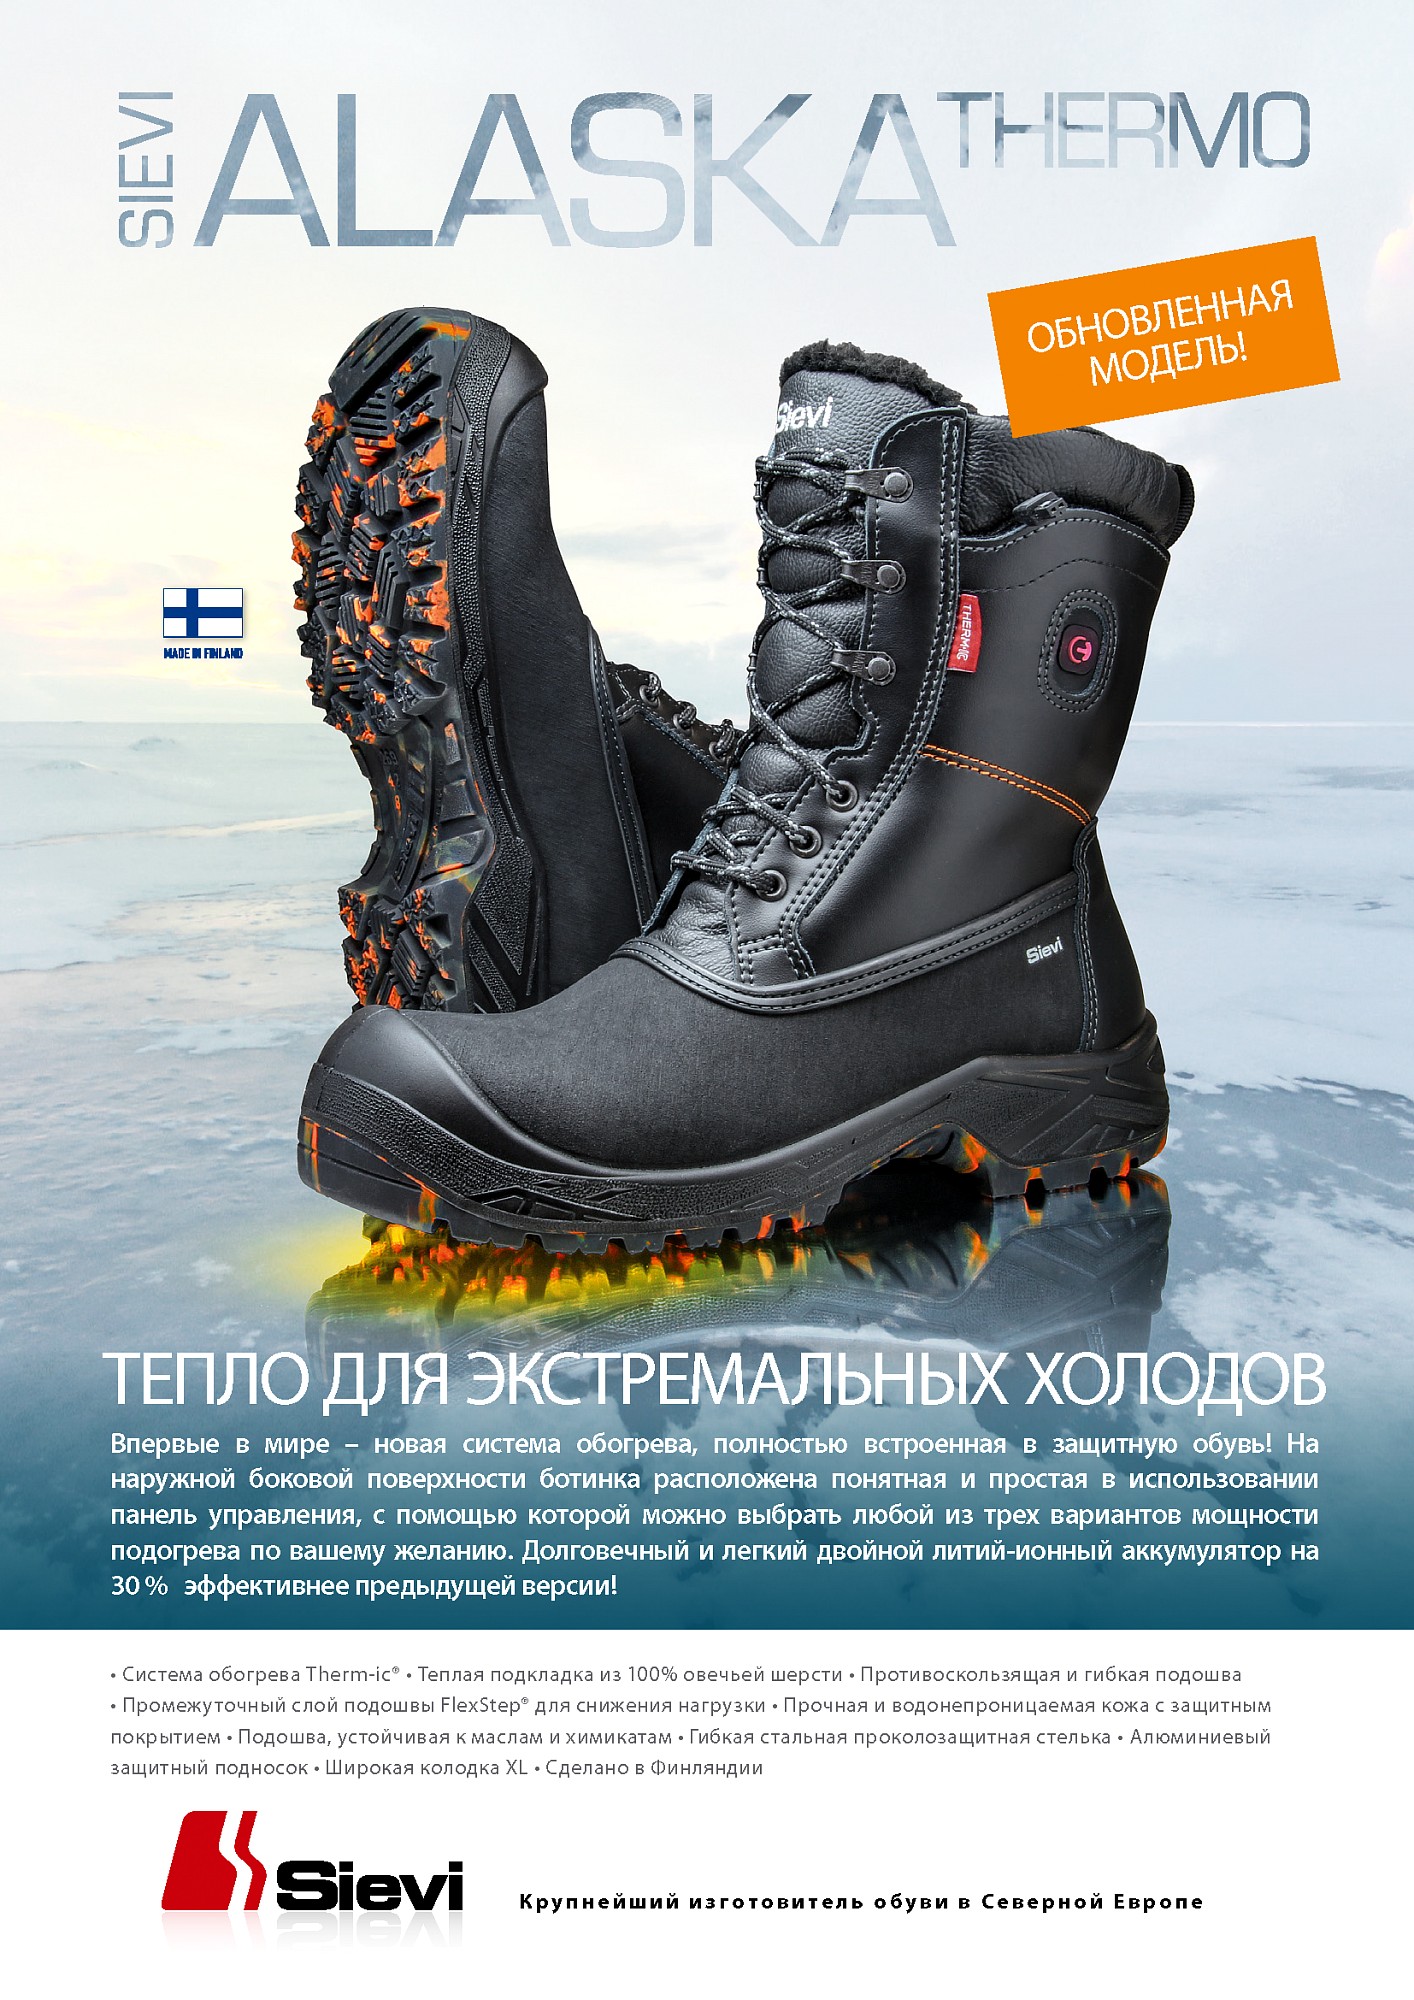 Ботинки с подогревом «Аляска Термо XL» :: Купить в интернет-магазине  Техноавиа по отличной цене в Москве